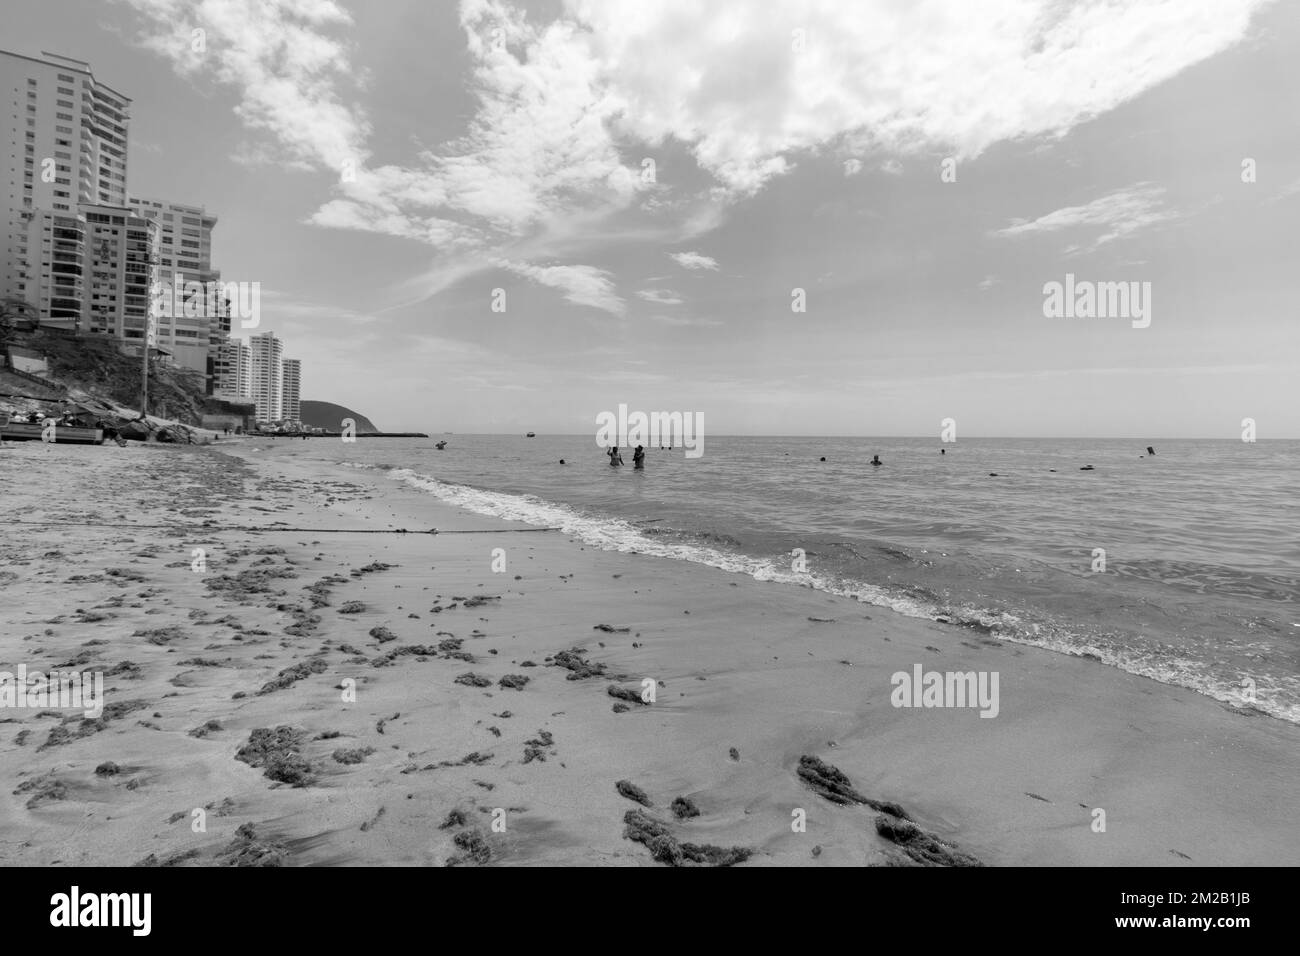 Belle scène d'été de la plage de Rodadero dans la ville de Santa Marta, Colombie avec la natation touristique et de hauts bâtiments résidentiels à l'arrière-plan Banque D'Images